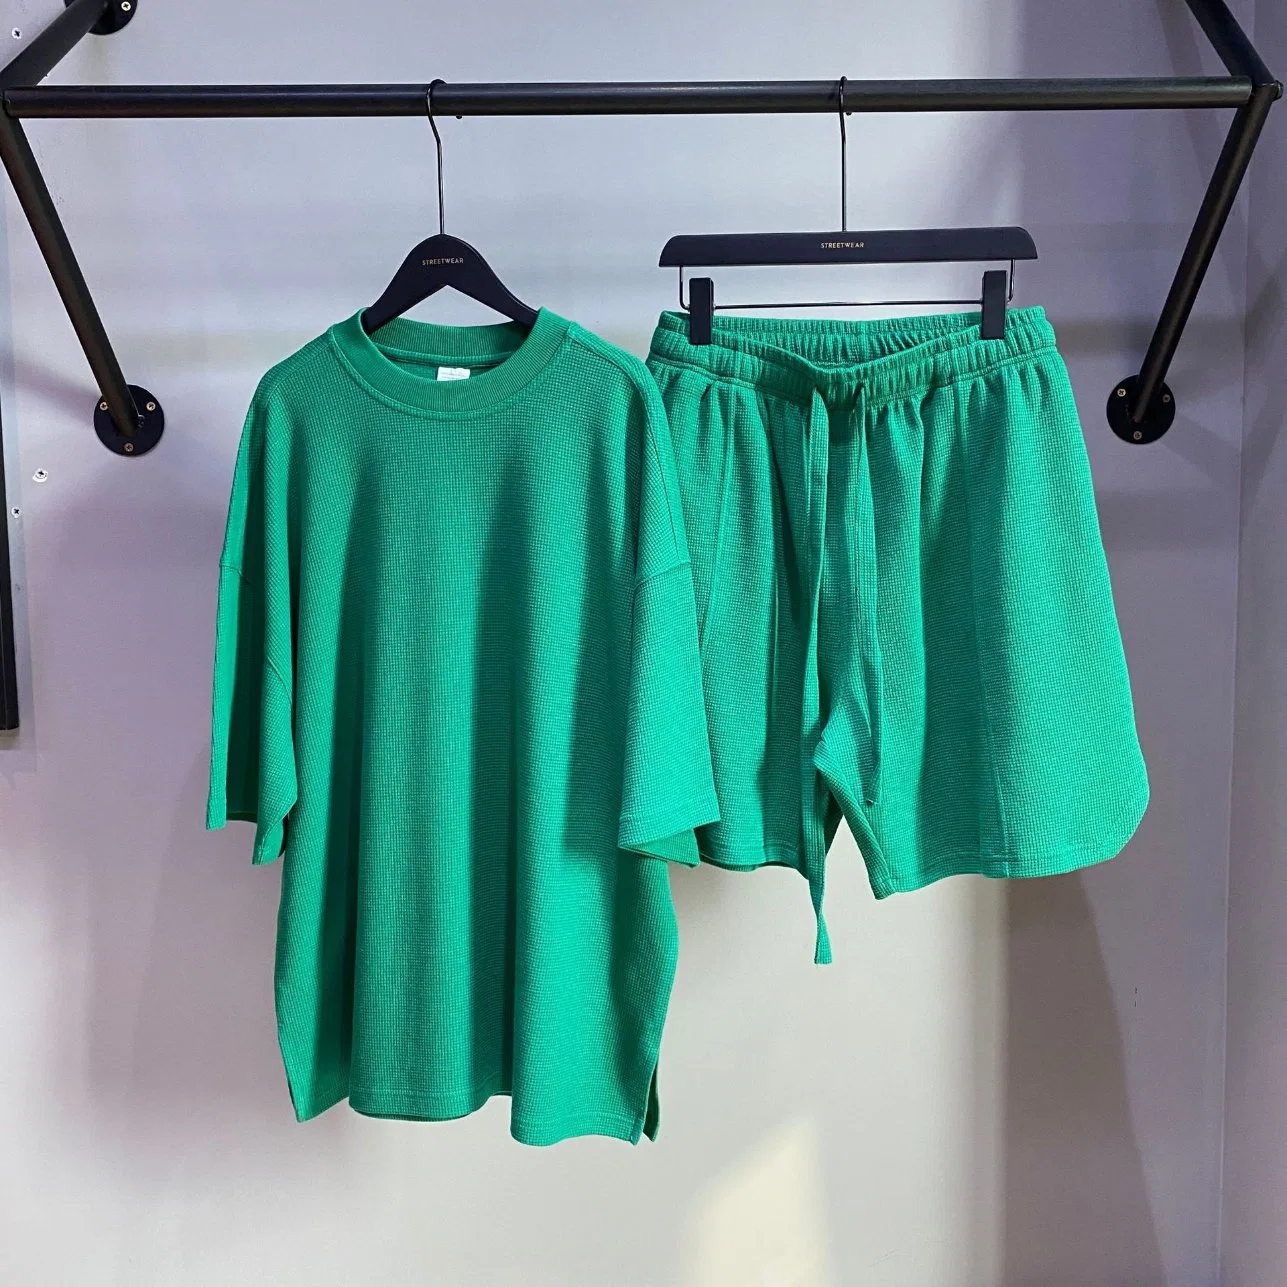 Alta calidad Loose Fashion en la camisa Custom Green 100% algodón Ropa de calle Lady Apparel